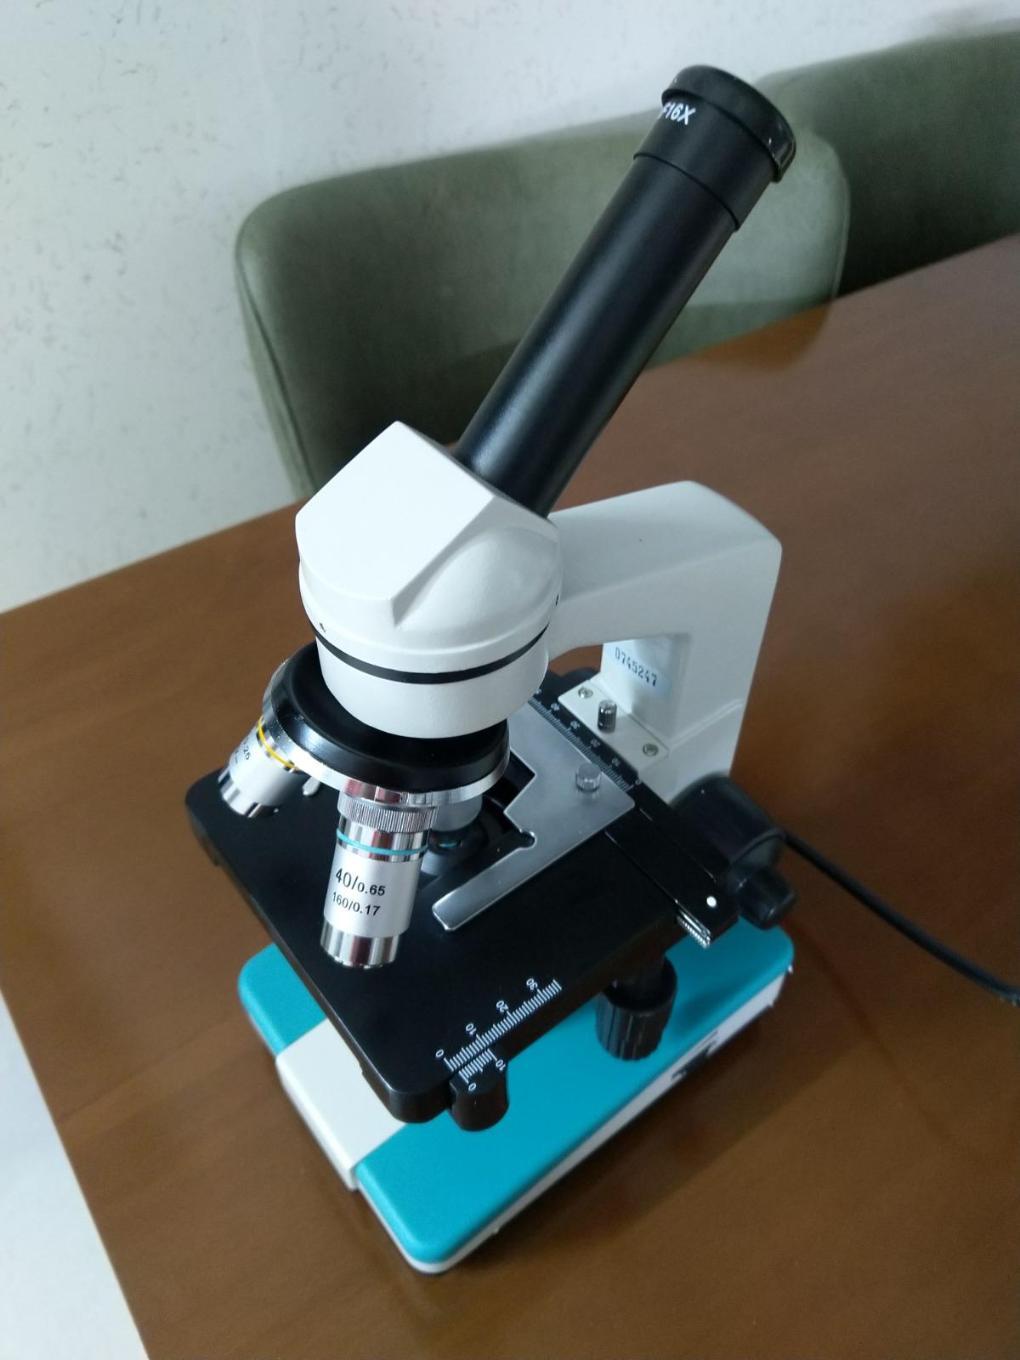 میکروسکوپ نوری تک چشمی ژنوس ۱۶۰۰xنو/مدینیوم